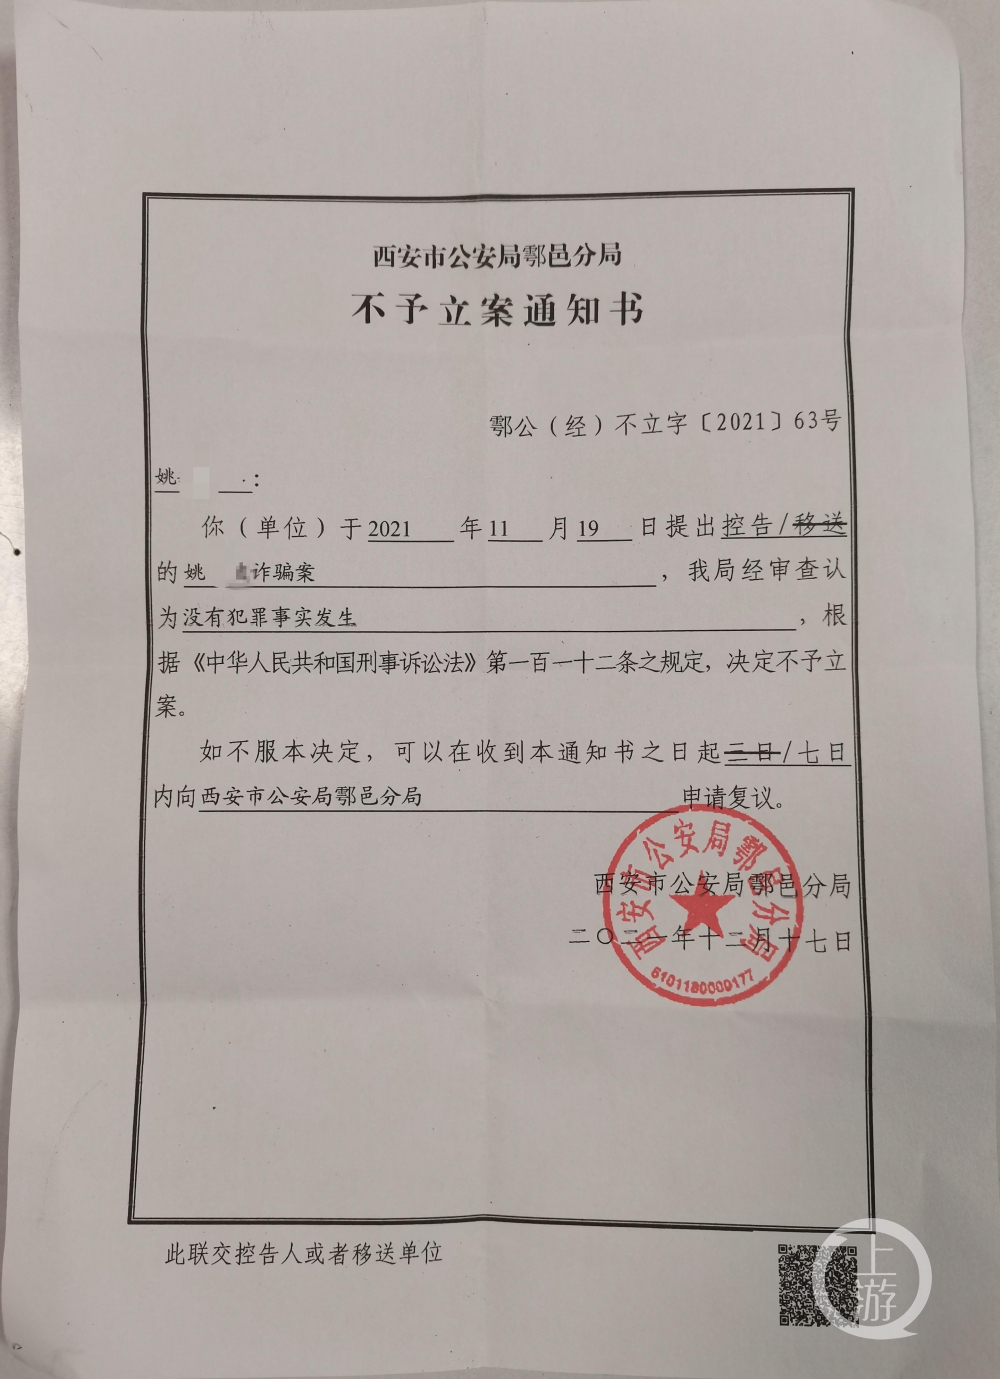 该《通知书》显示,11月19日,姚先生以诈骗罪向警方报案,控告彩票投注